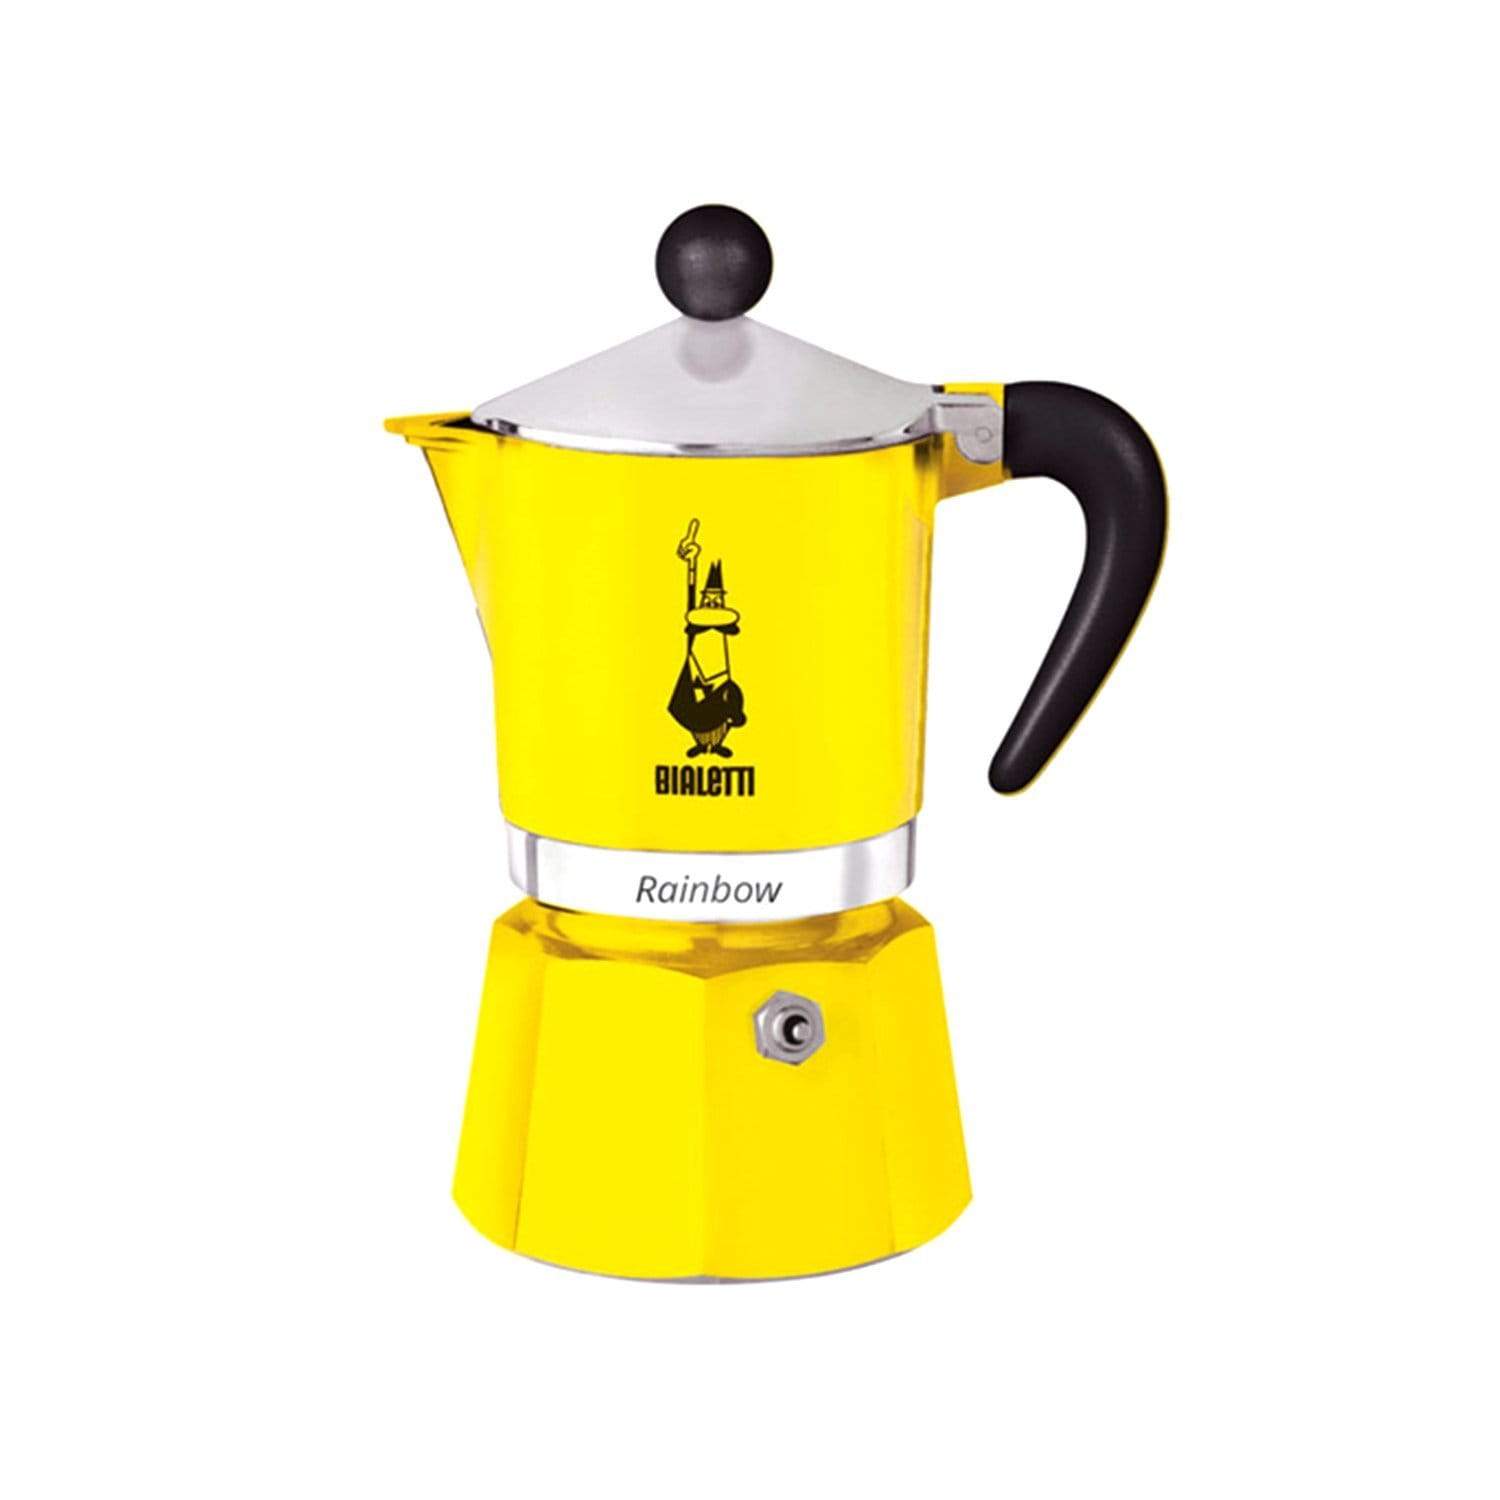 بياليتي ماكينة تحضير القهوة رينبو - أصفر، 3 أكواب - 4982 - جاشنمال هوم